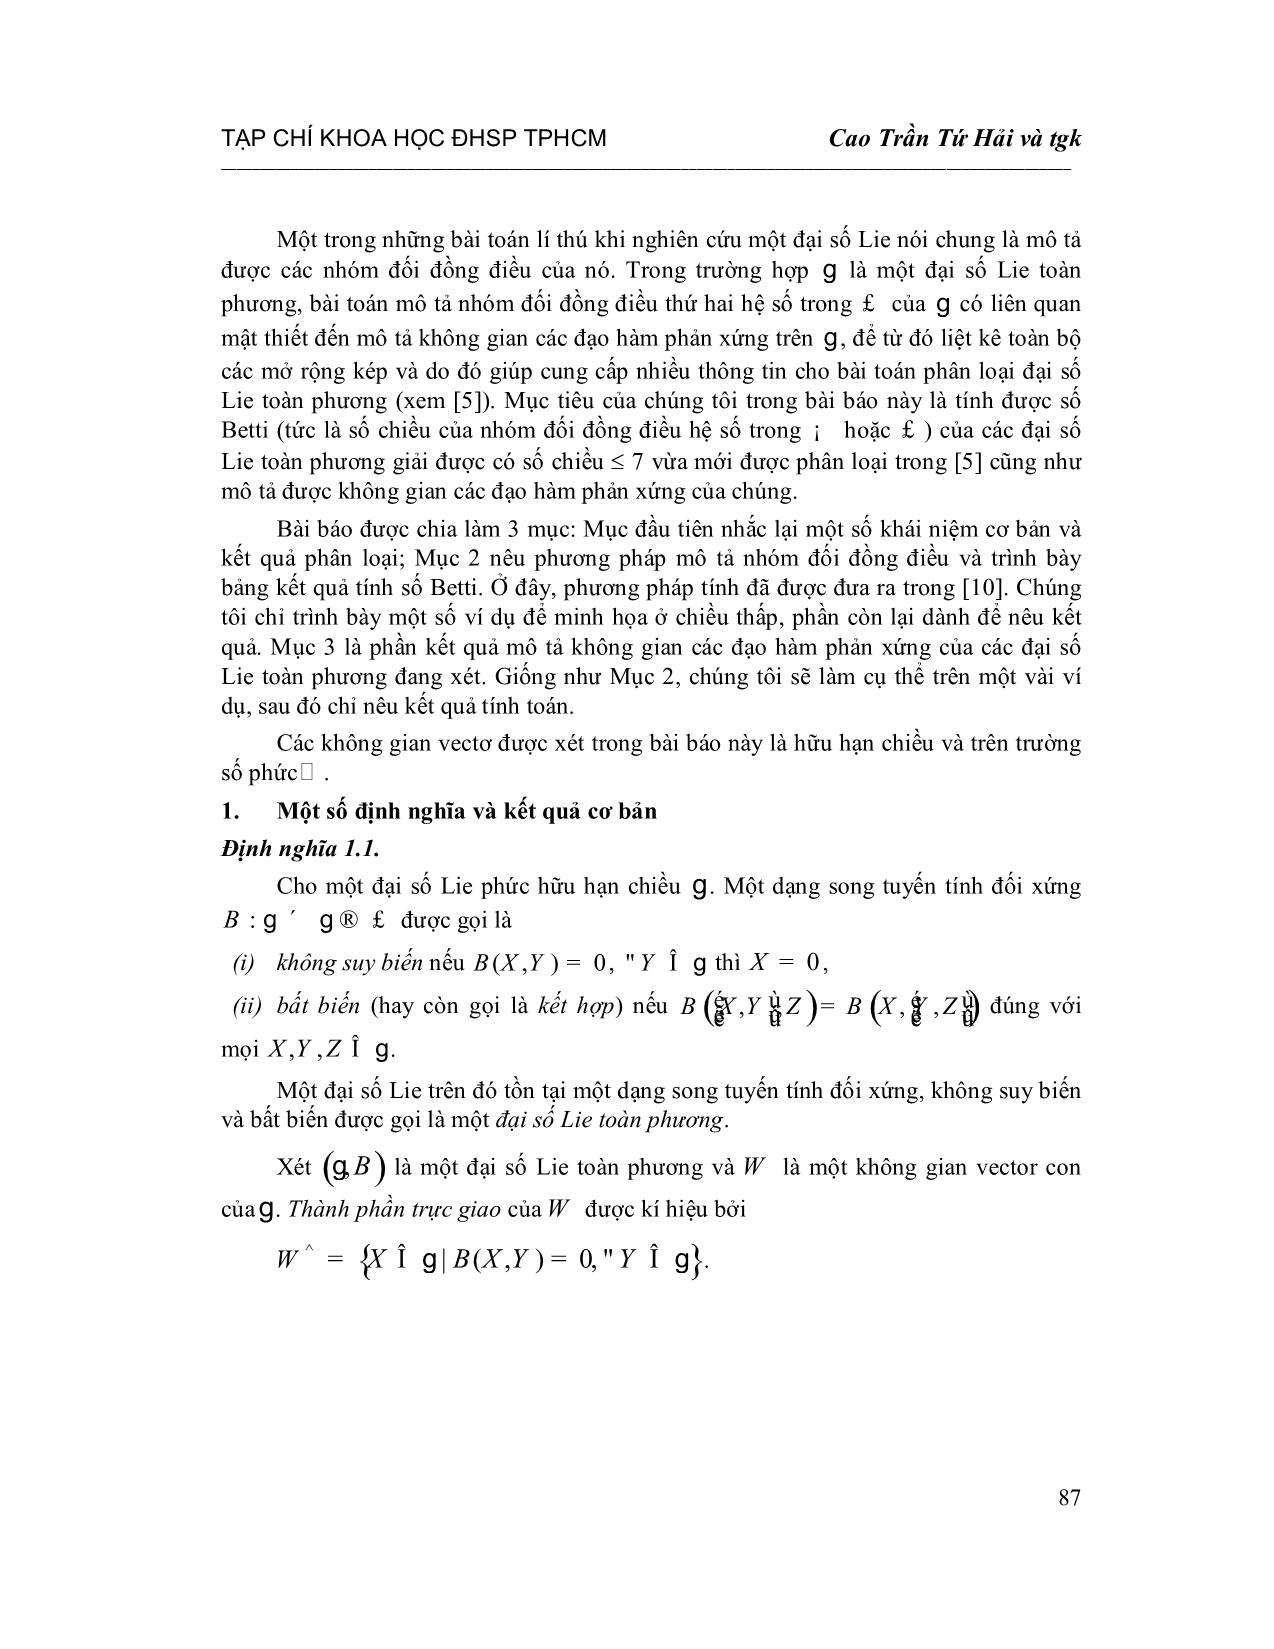 Số Betti và không gian các đạo hàm phản xứng của các đại số Lie toàn phương giải được có số chiều 7 trang 2